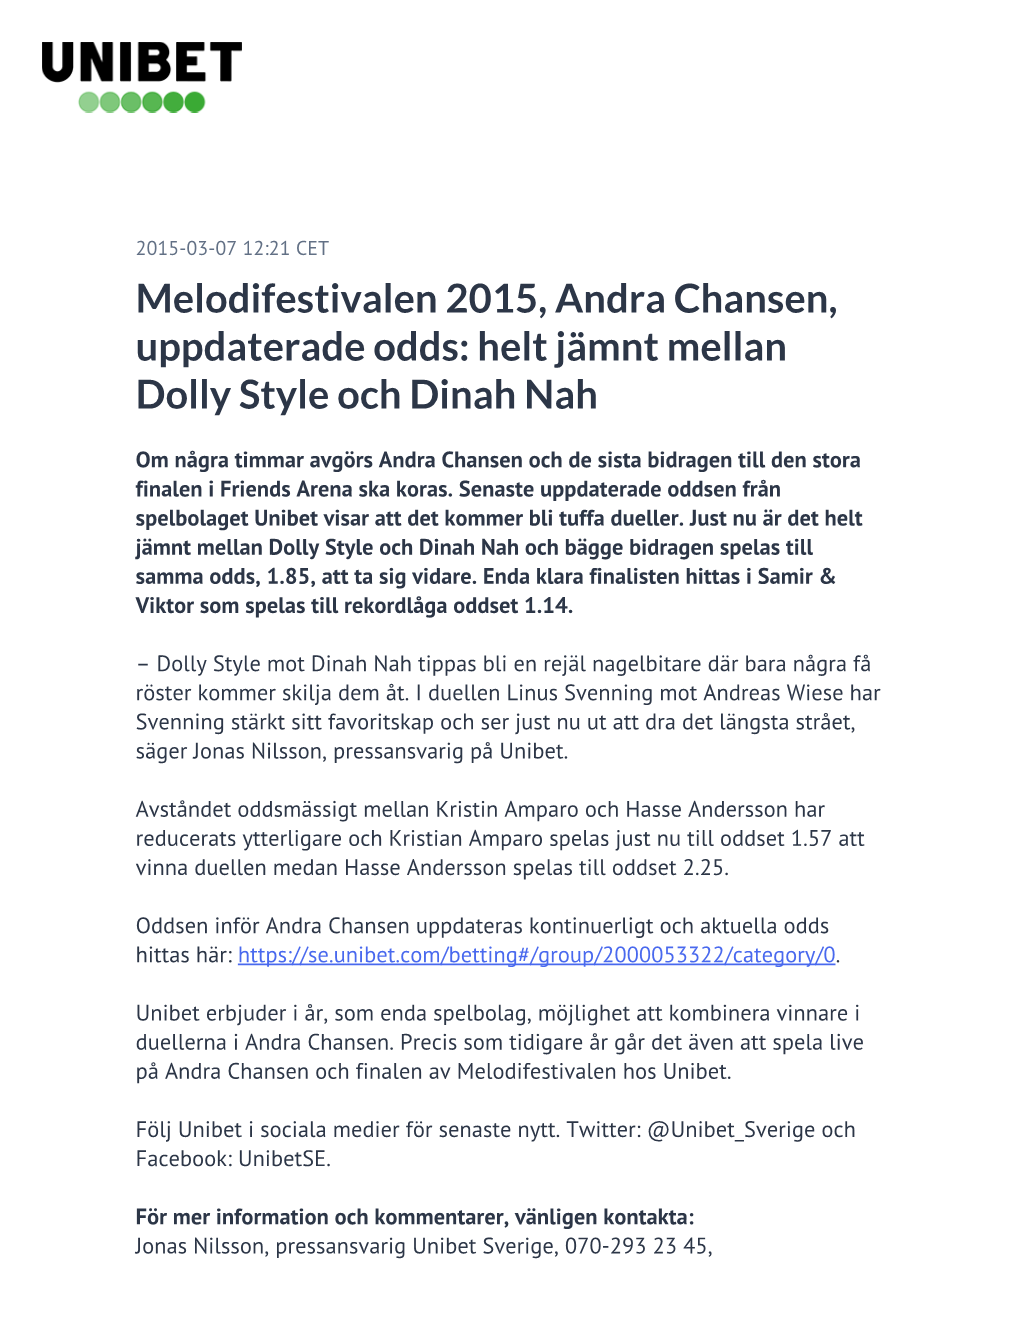 Melodifestivalen 2015, Andra Chansen, Uppdaterade Odds: Helt Jämnt Mellan Dolly Style Och Dinah Nah